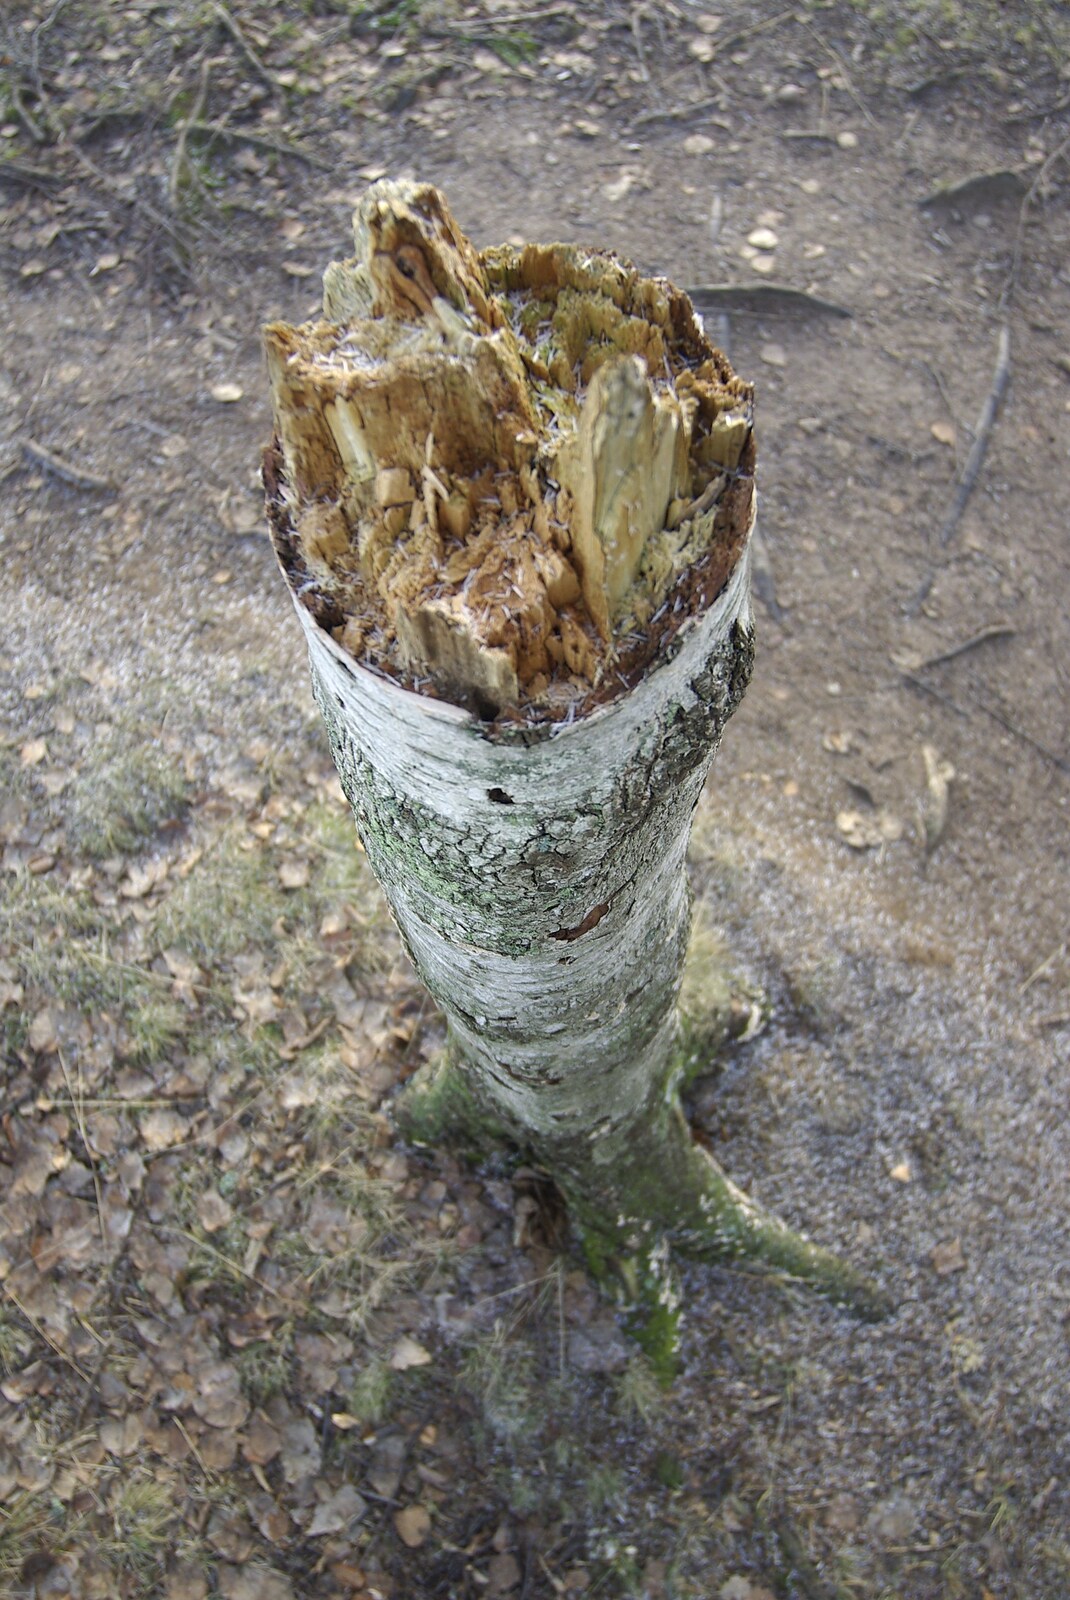 A broken tree stump from Gamla Uppsala, Uppsala County, Sweden - 16th December 2007